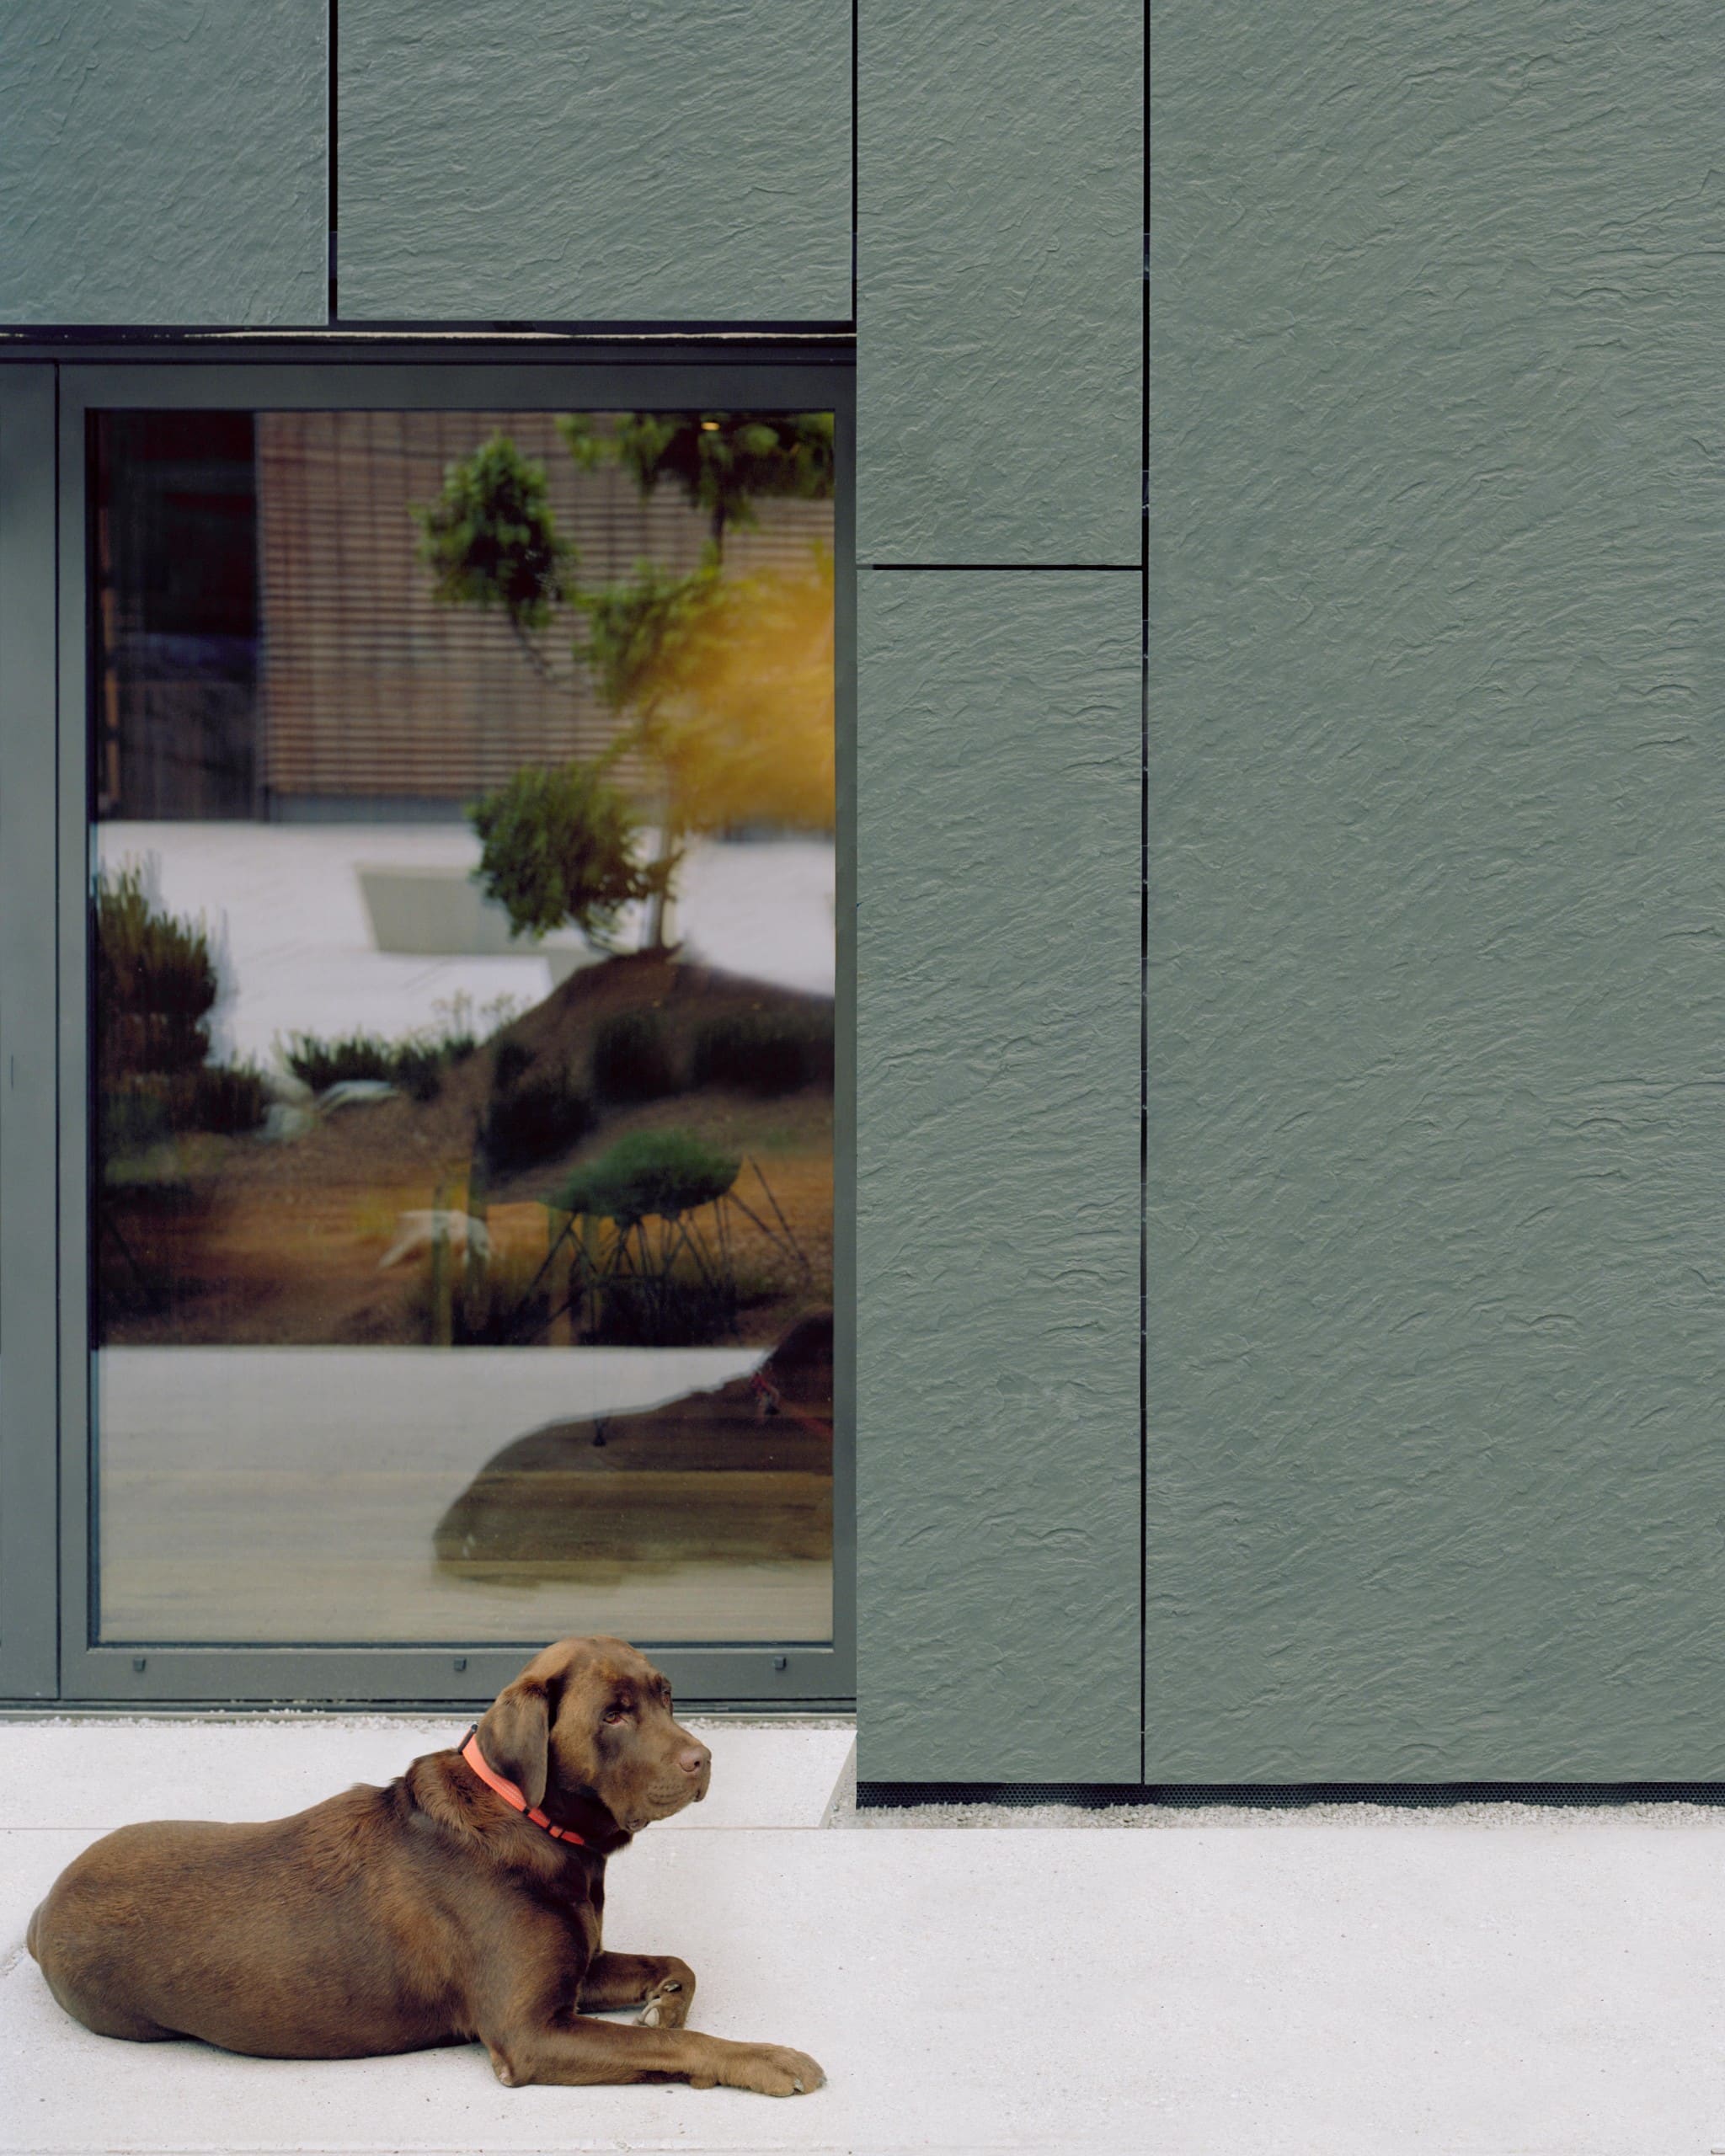 Ein Hund liegt auf einer Terrasse vor einem Gebäude mit dunkelgrauer Steinfassade. Foto: Rieder Group/Rasmus Norlander